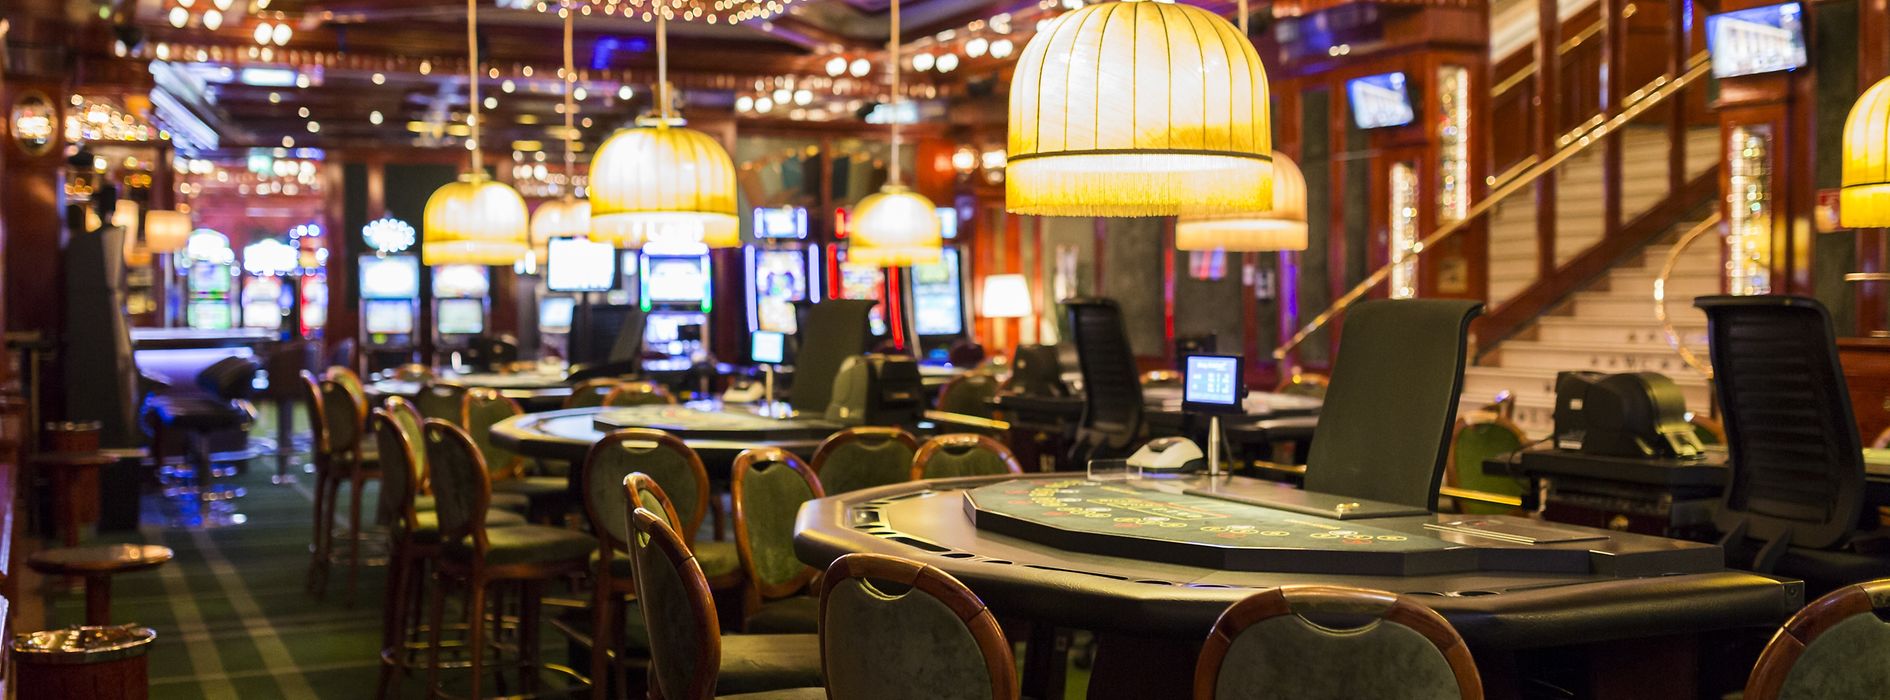 Ein einfacher Plan für legale Online Casinos